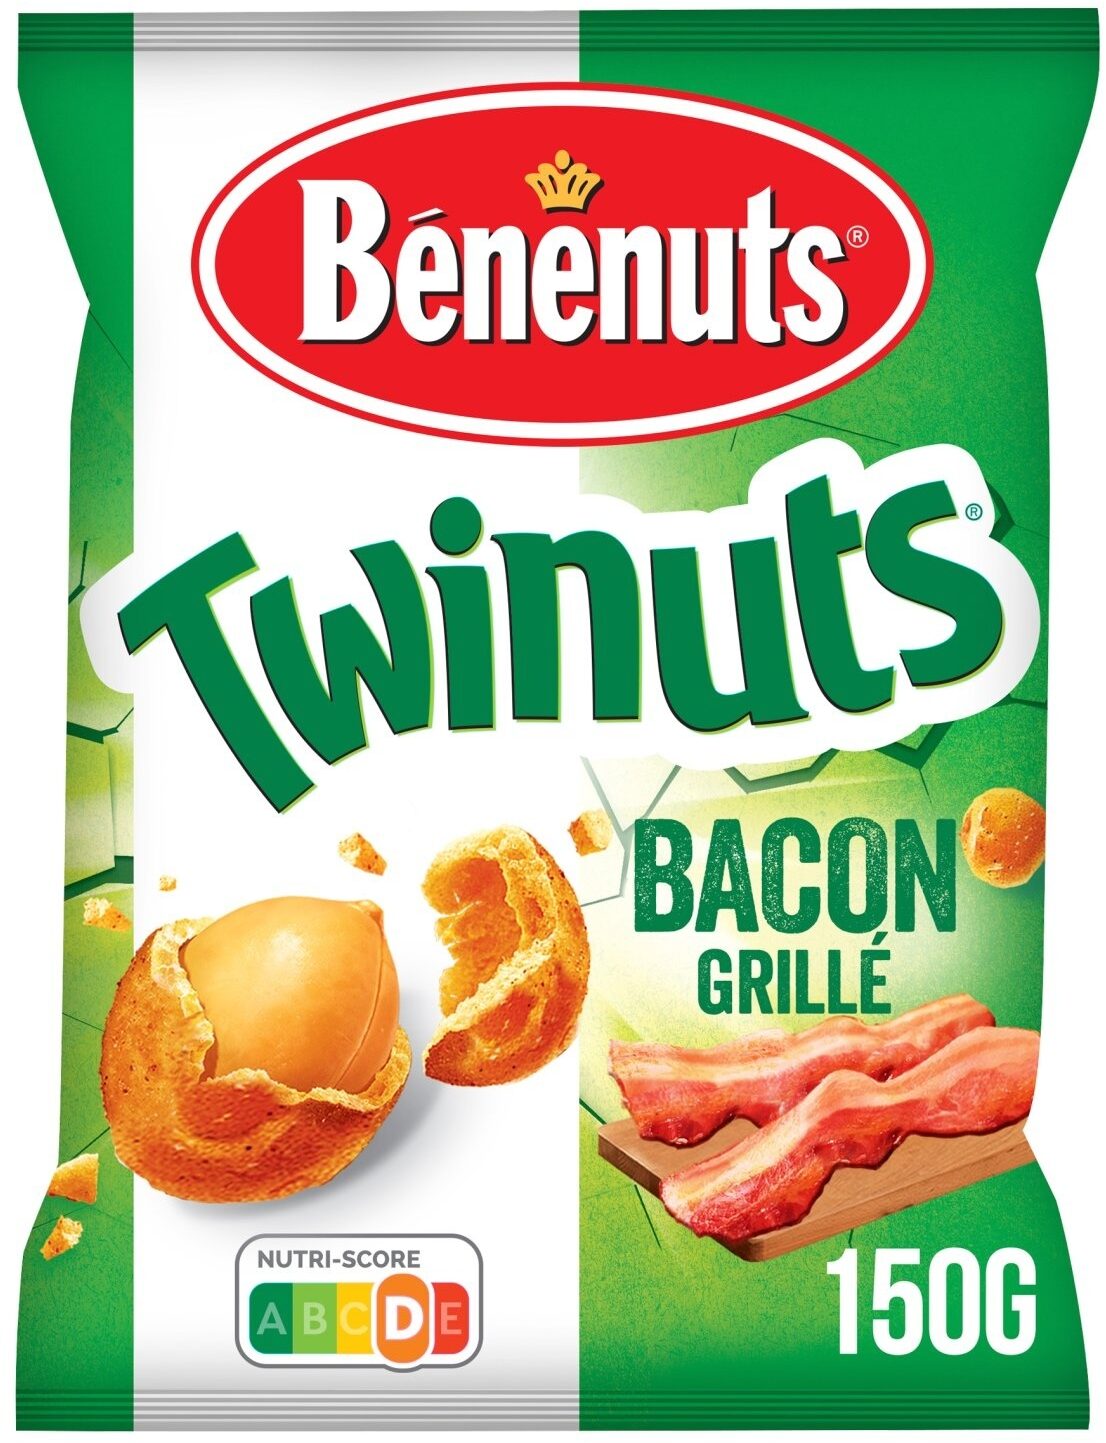 Bénénuts Twinuts saveur bacon grillé - Produit